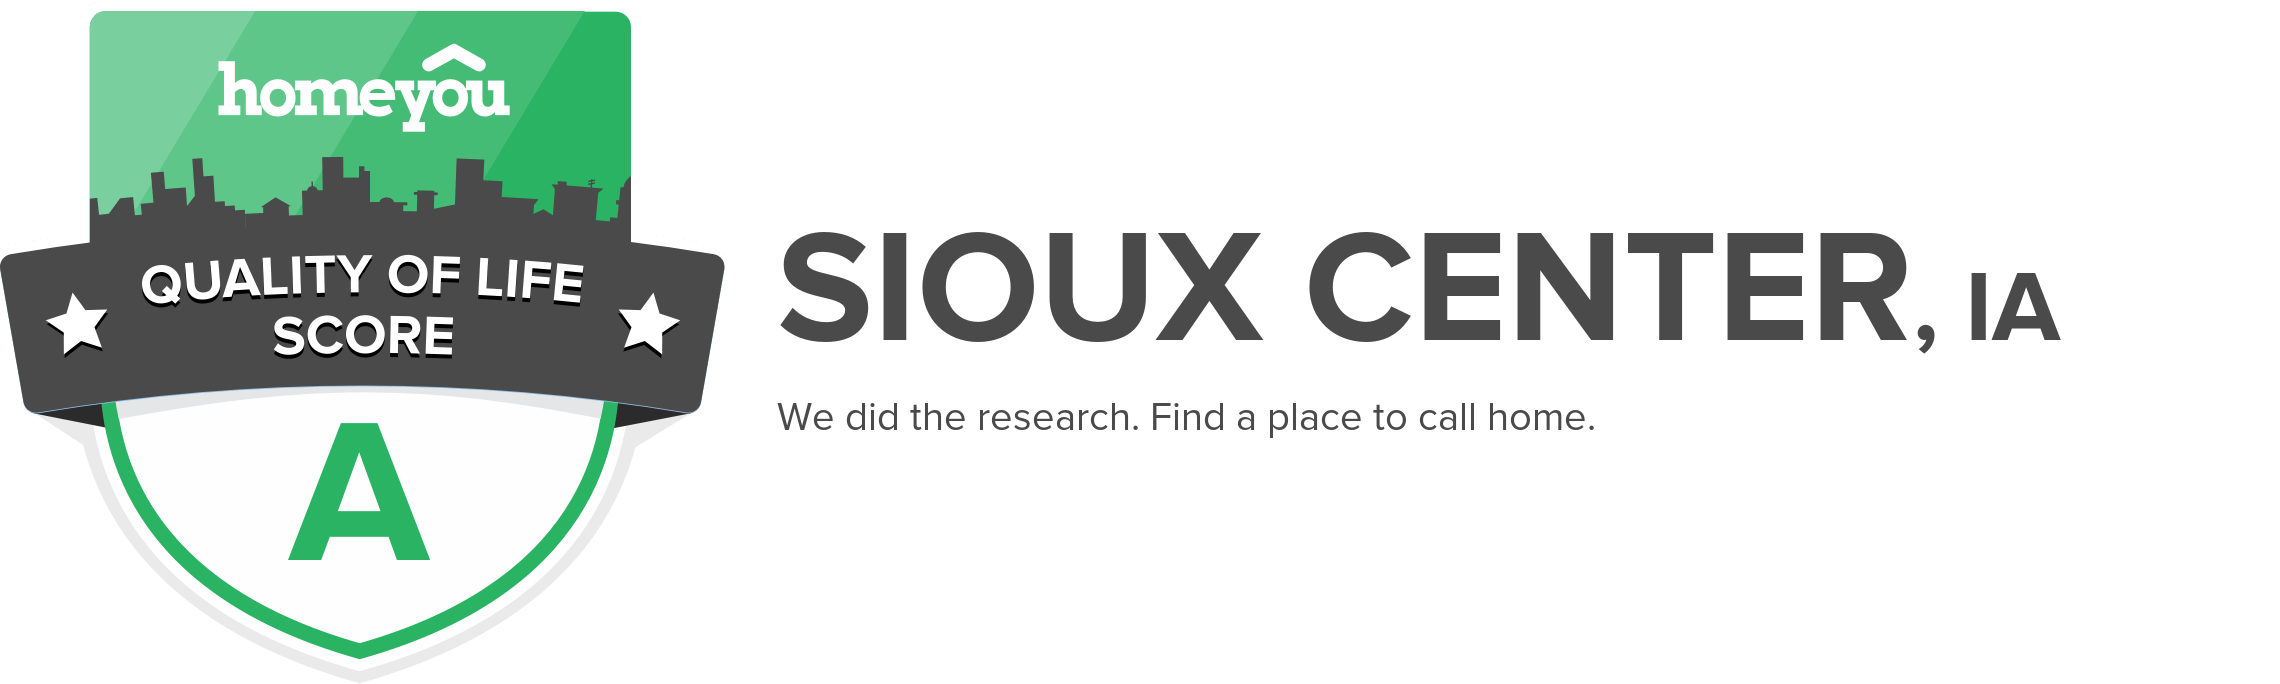 Sioux Center, IA